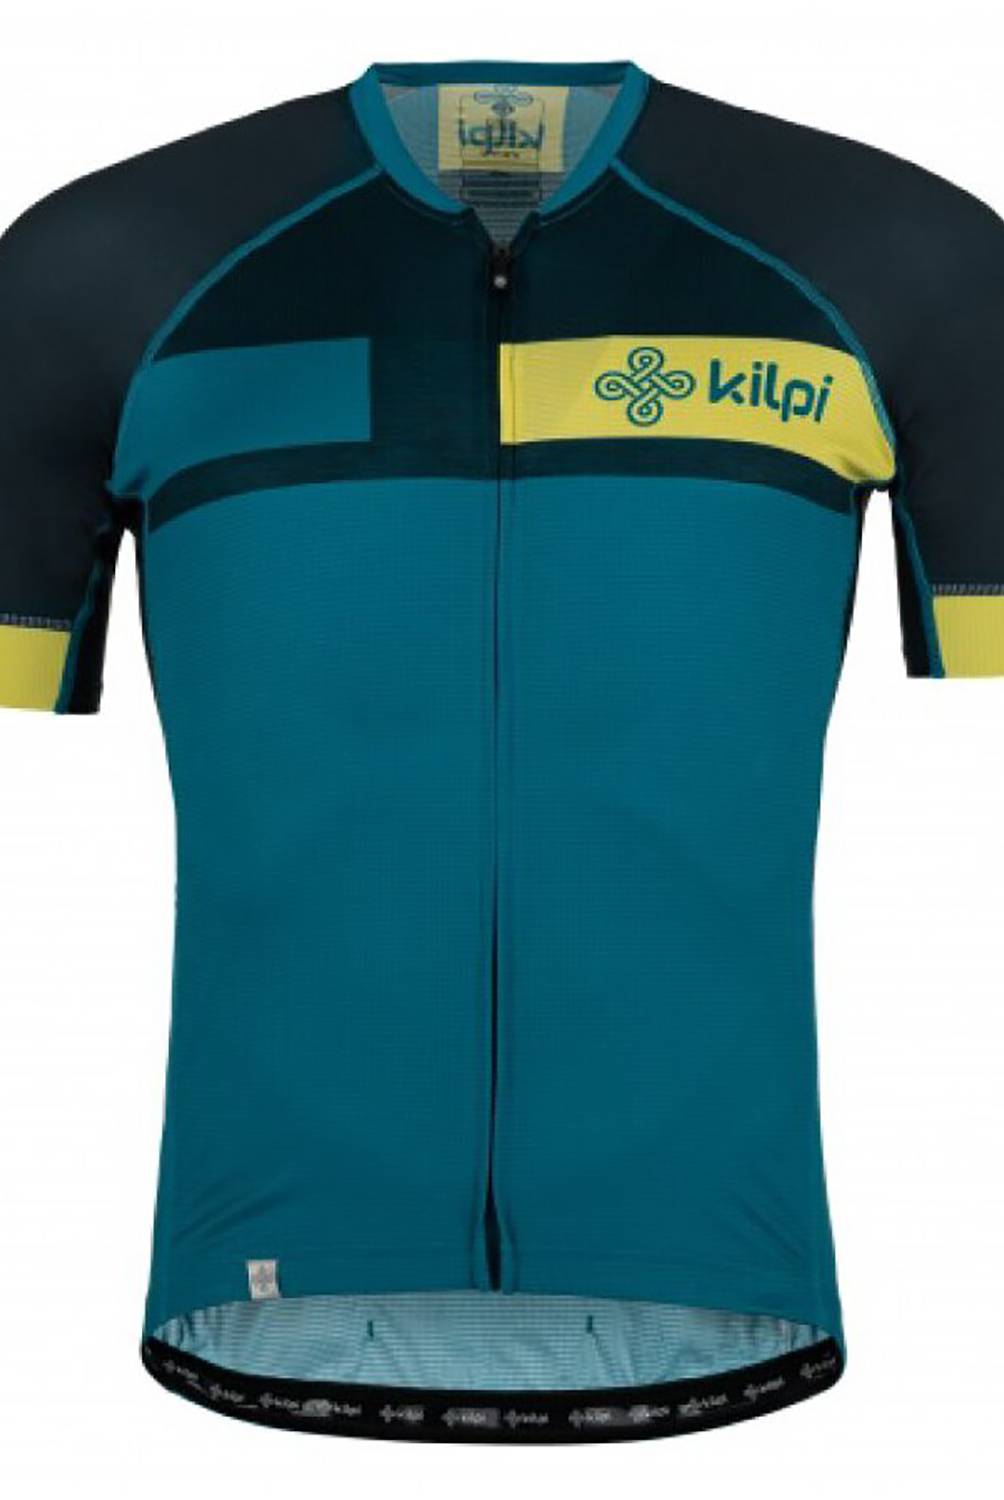 KILPI - Tricota Ciclismo Kilpi Hombre Treviso-M Dbl